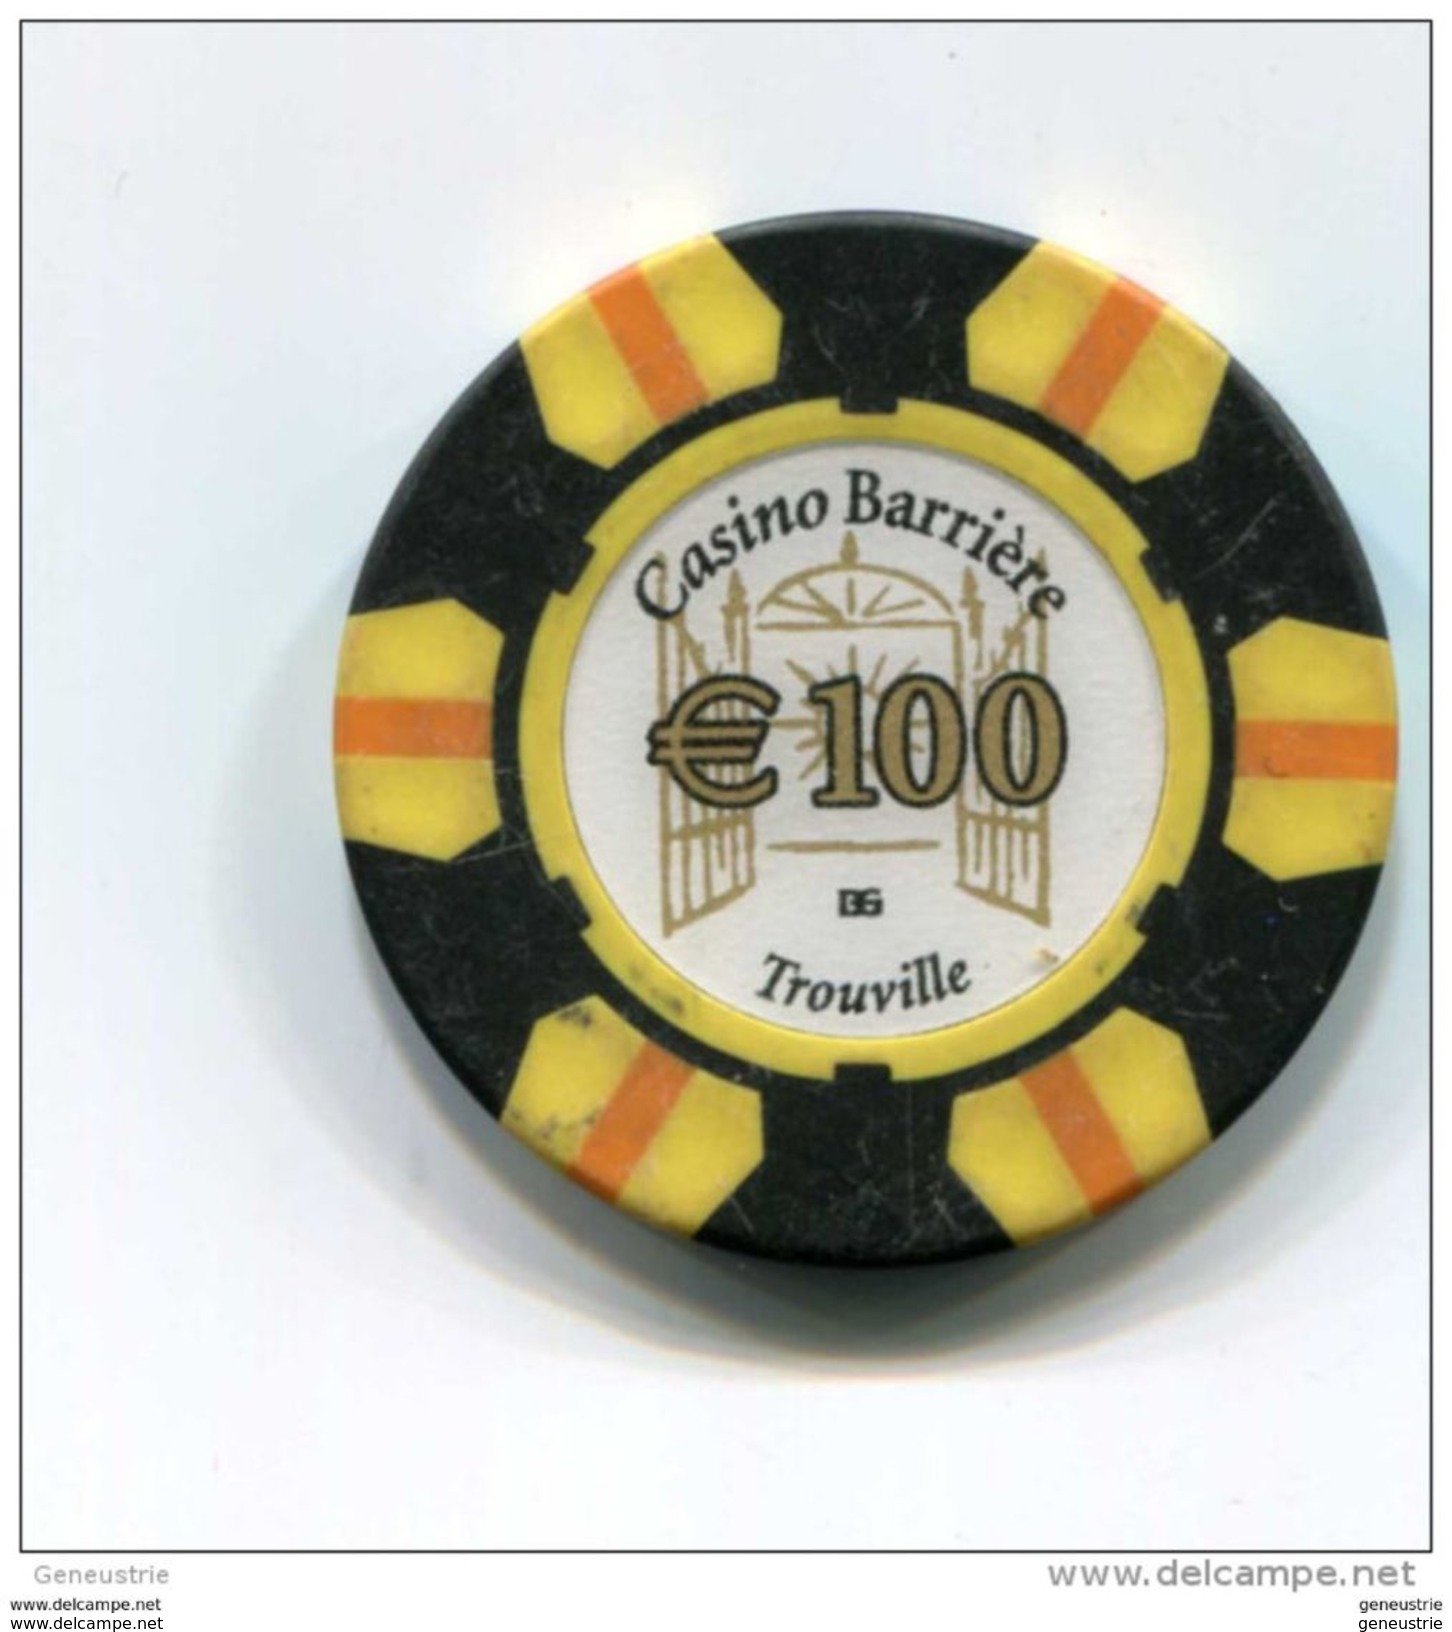 Jeton De Casino "100€ Euro Casino Barrière Trouville" French Casino Token - Casino